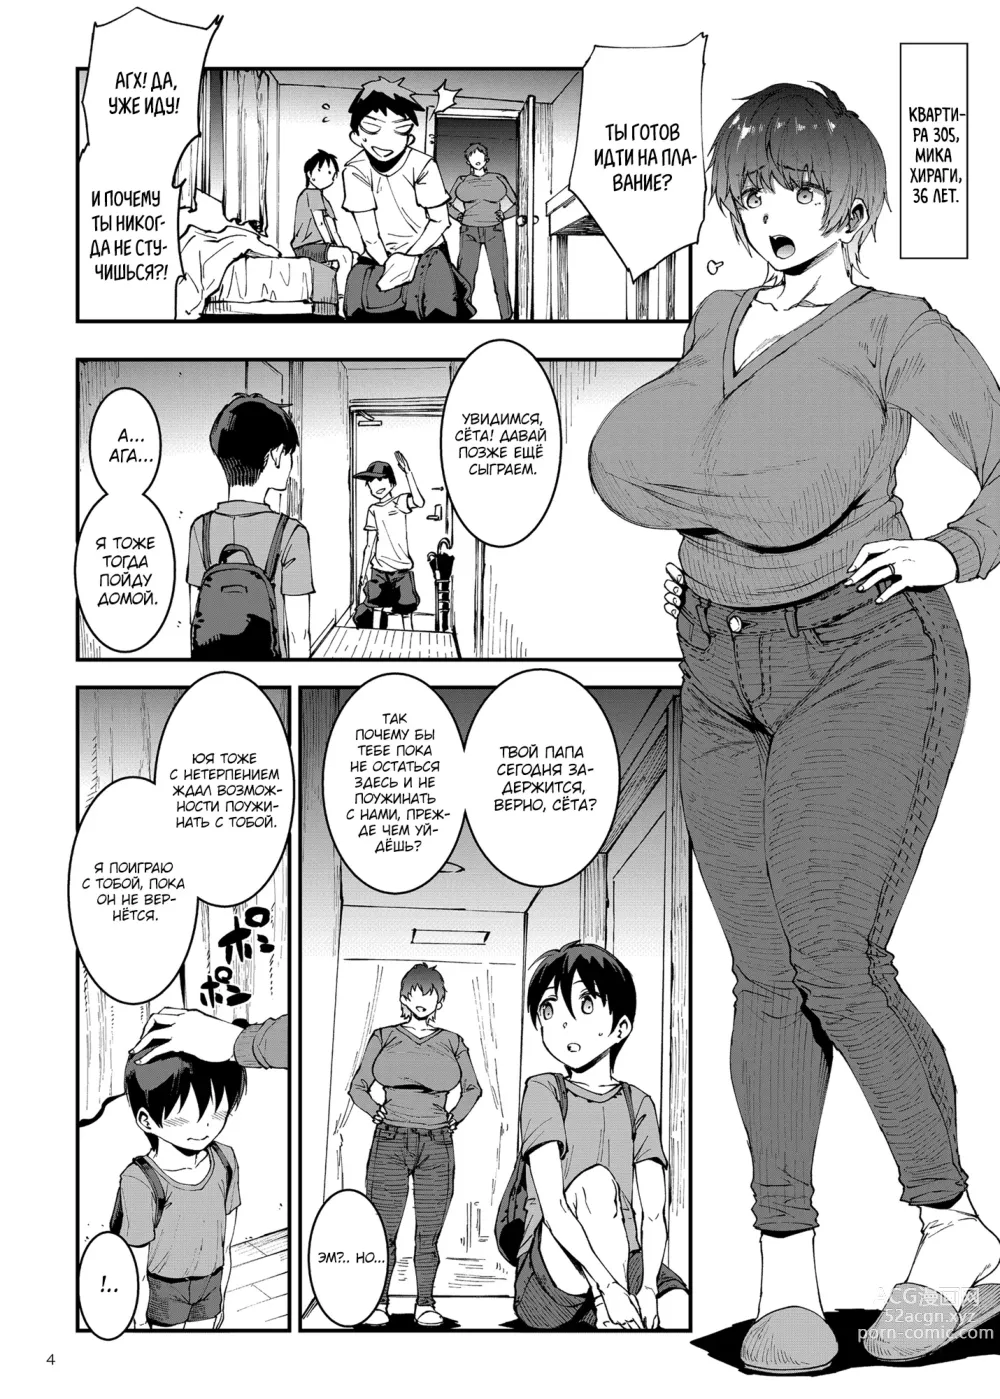 Page 4 of doujinshi Особняк мамочки ~Глава первая: Квартира 305, Хираги Мика, 36 лет~